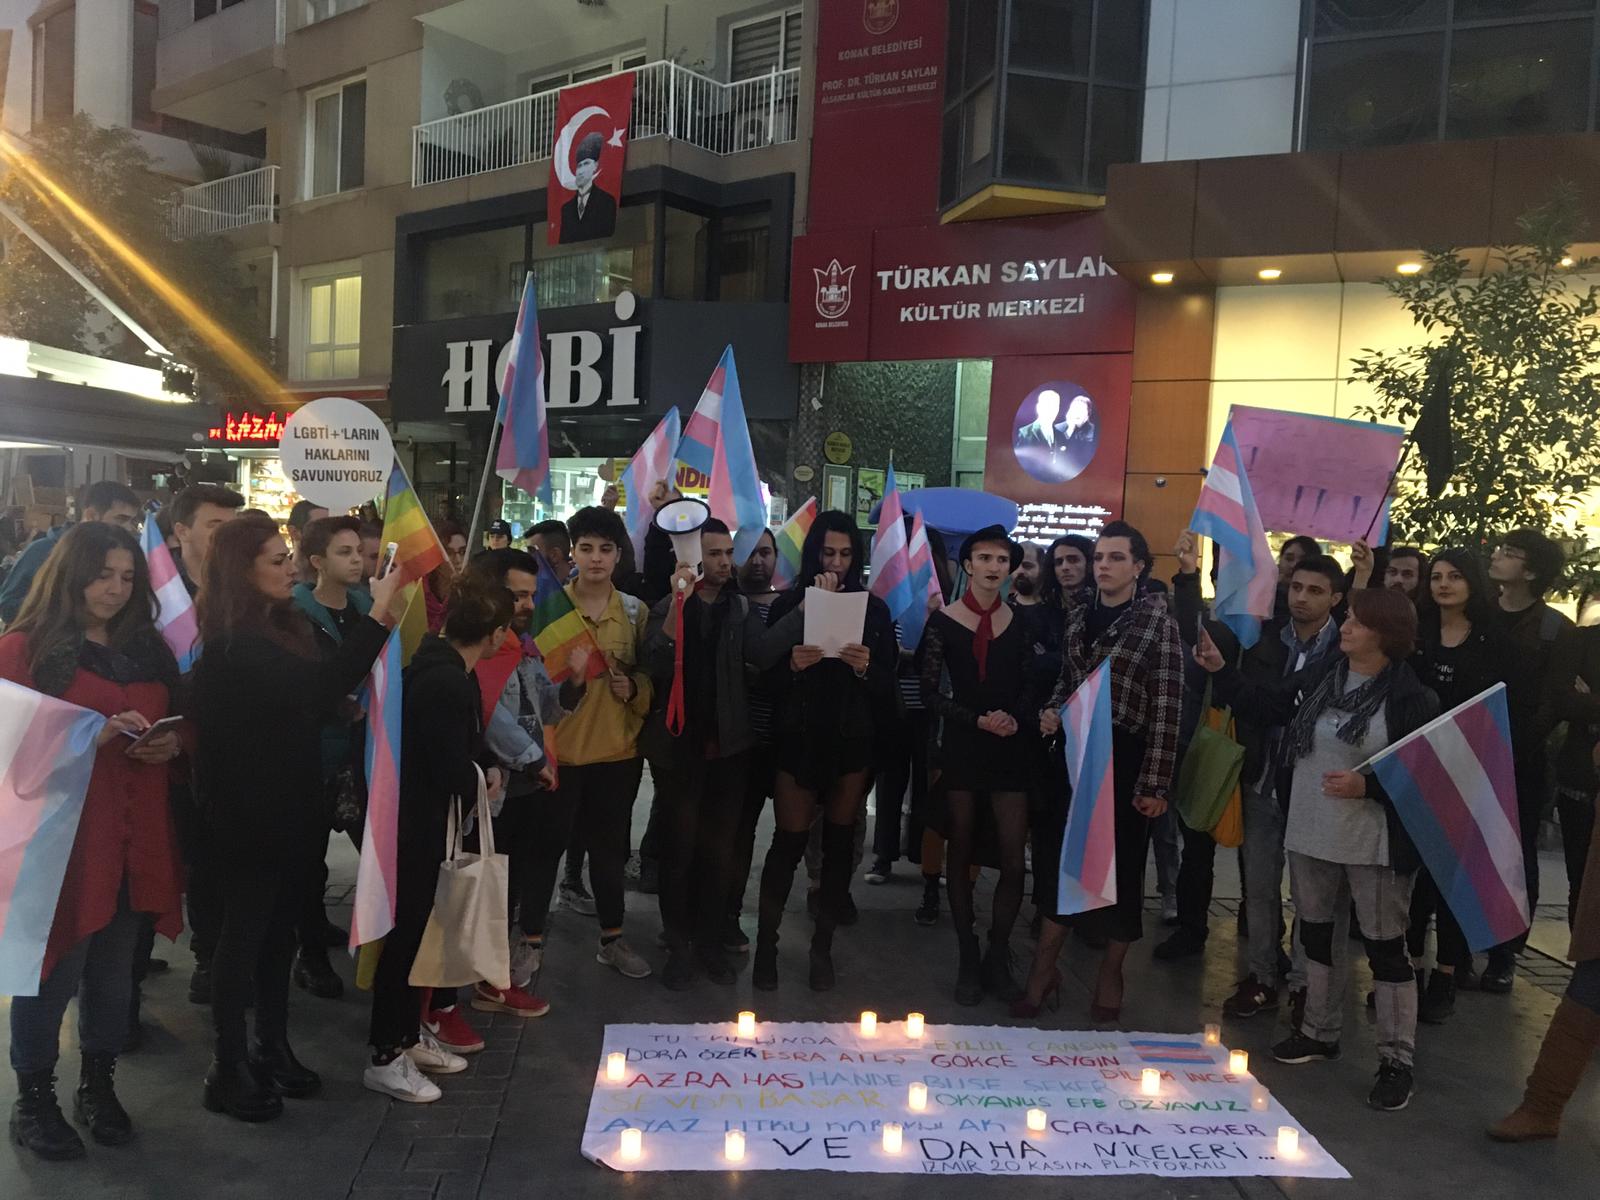 İzmir 20 Kasım Platformu: “Transfobiyle tartılan adalet terazisi transların hayatlarını ellerinden alıyor!” Kaos GL - LGBTİ+ Haber Portalı